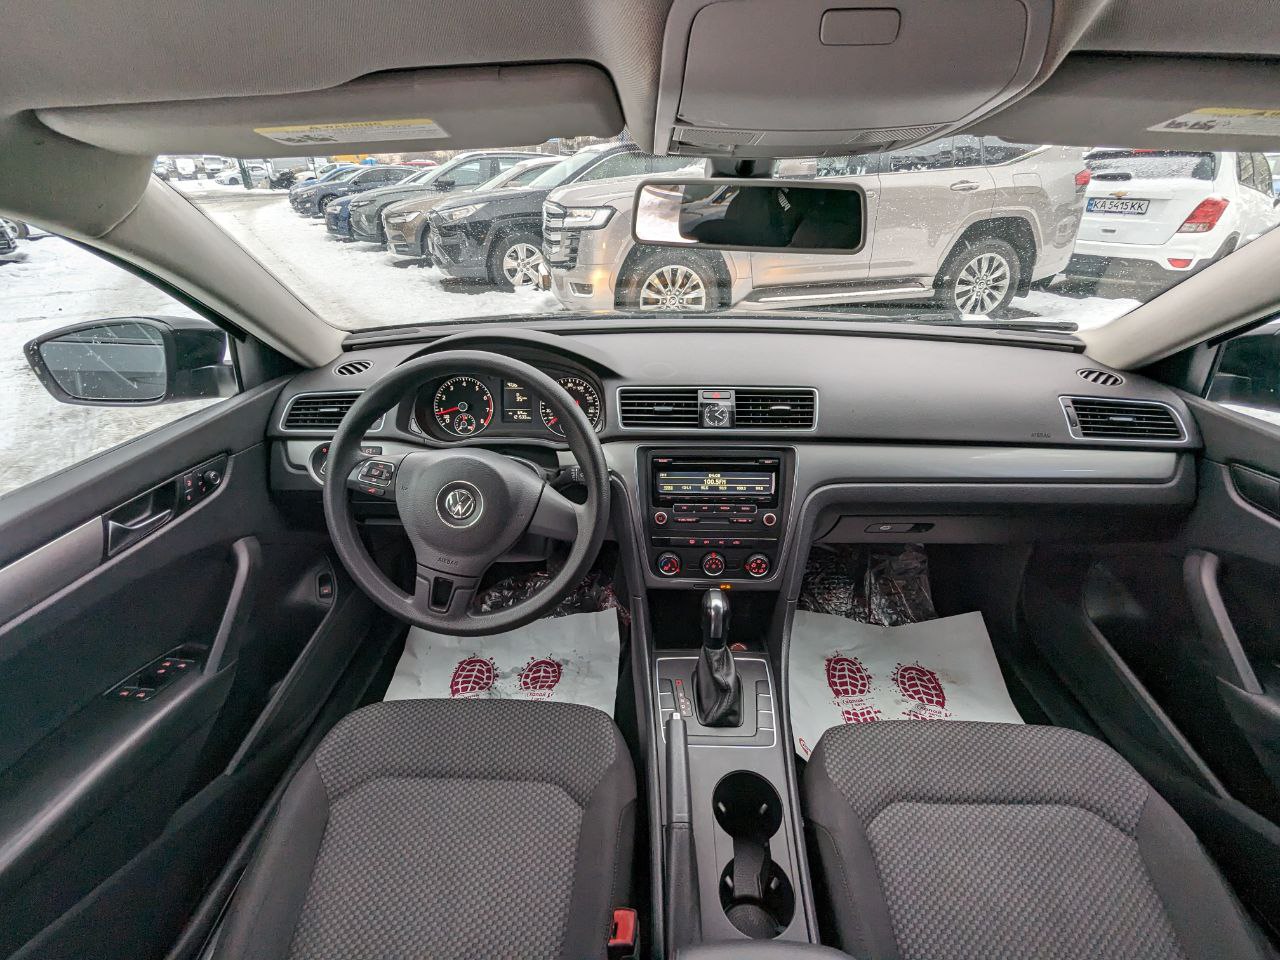 Volkswagen Passat 2013